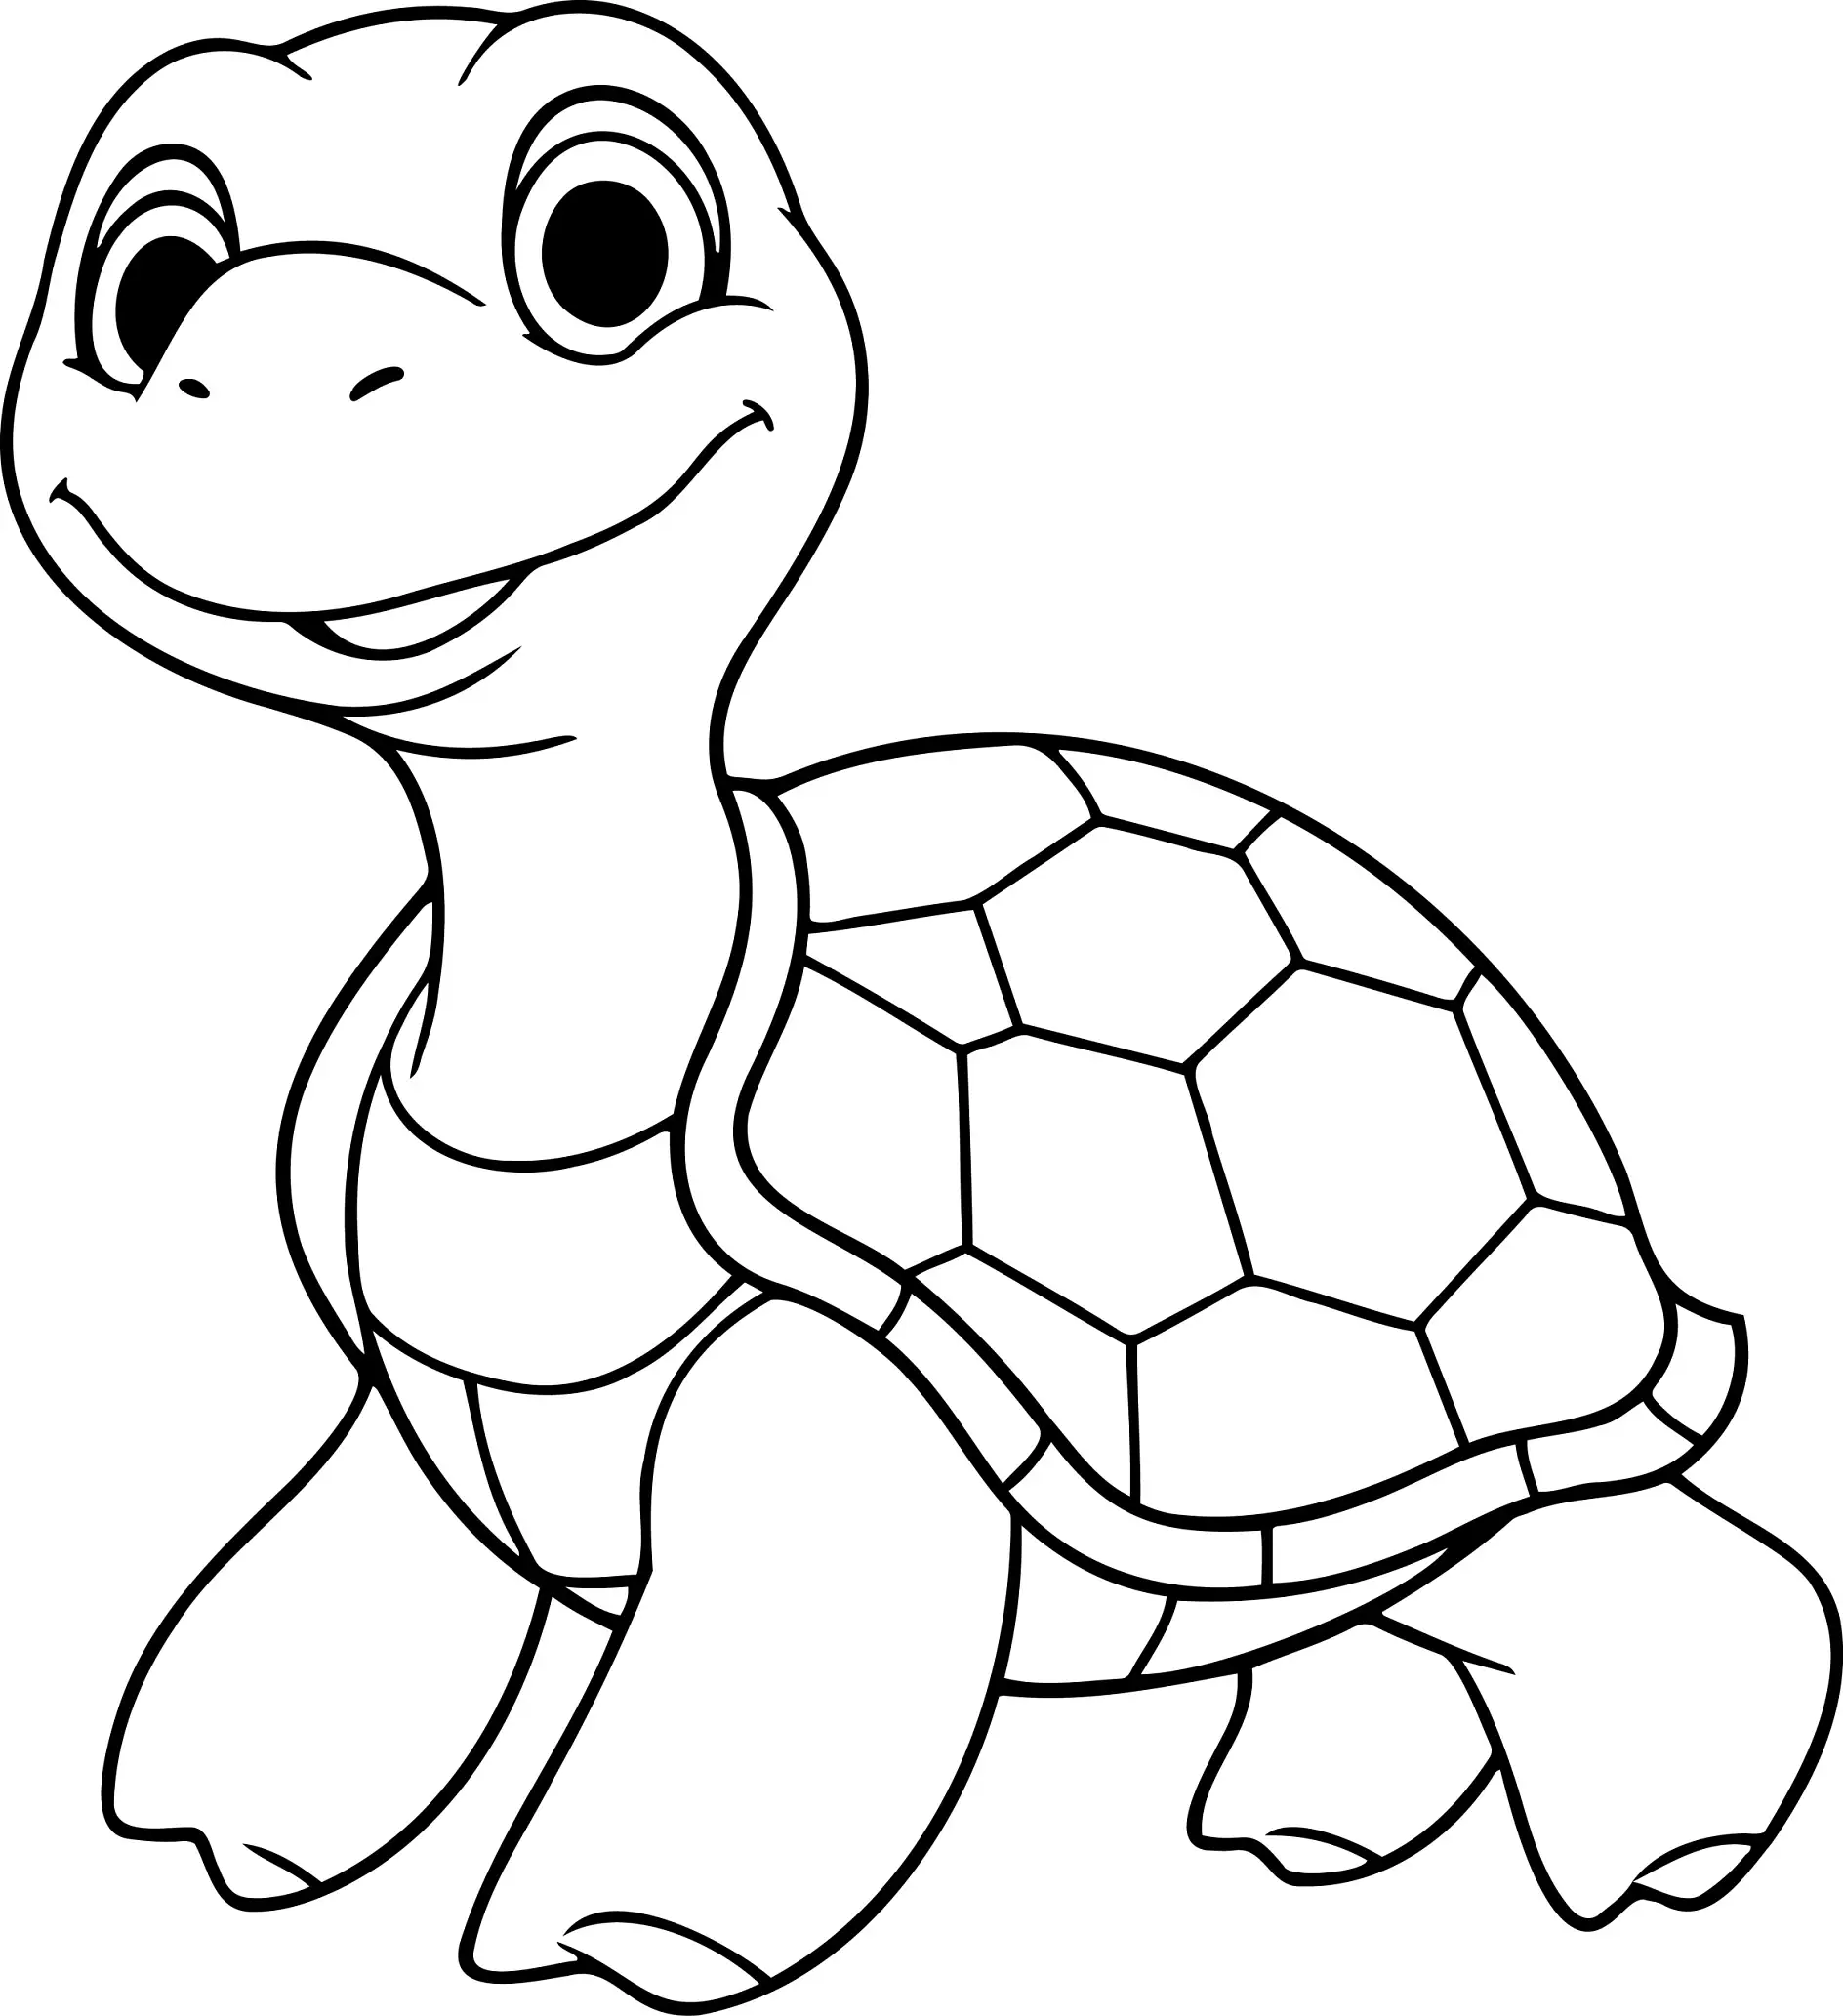 Ausmalbild lächelnde Schildkröte im Profil